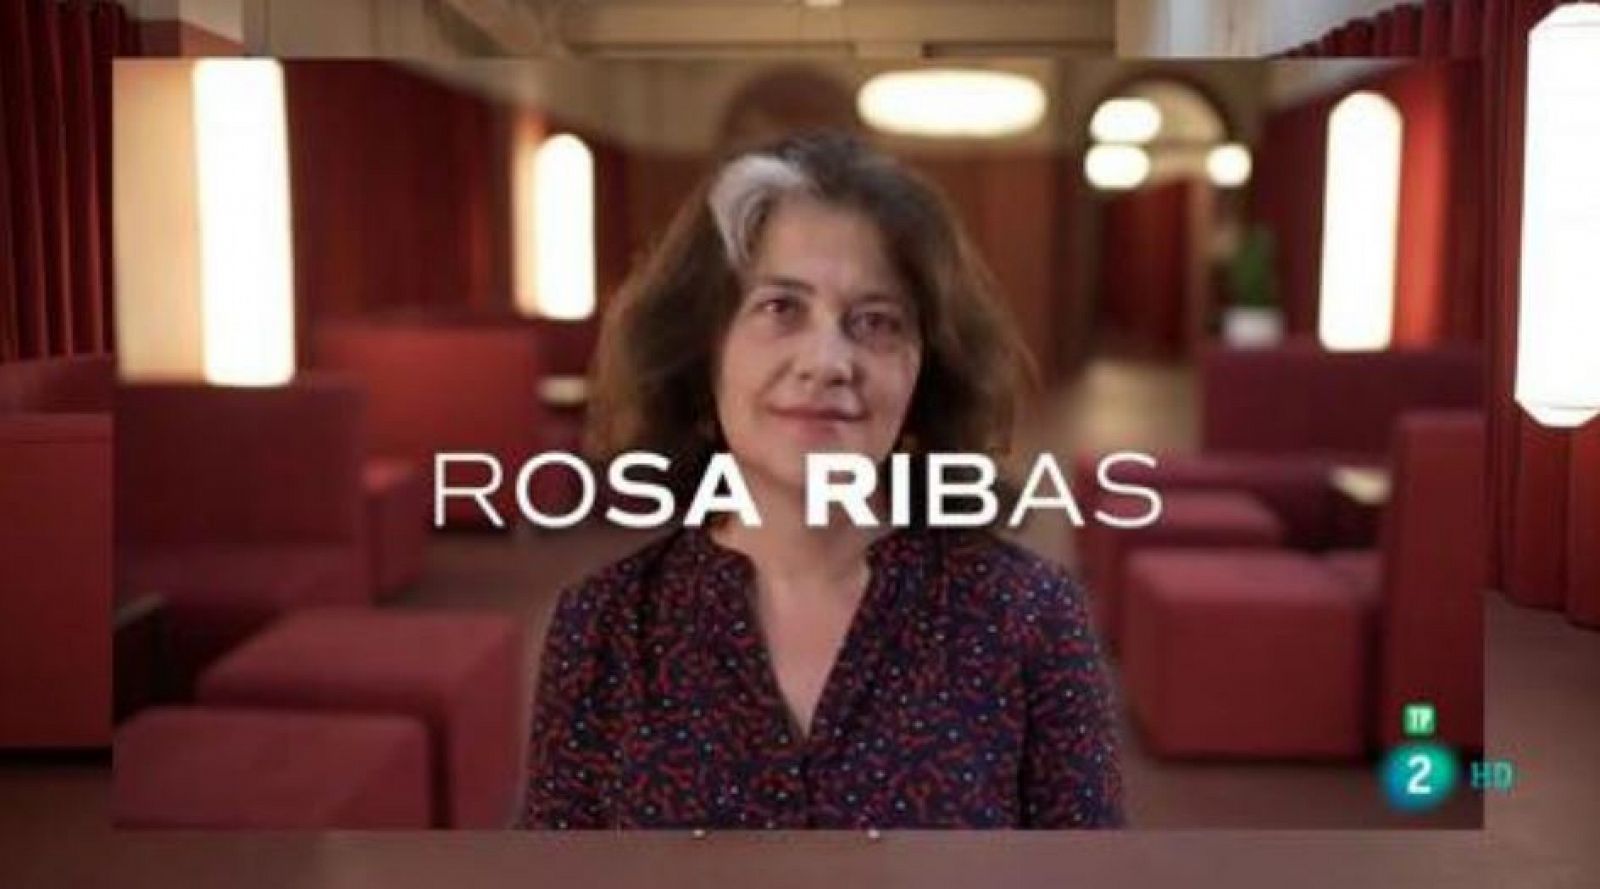 La escritora de "Un asunto demasiado familiar", Rosa Ribas responde al cuestionario del programa.